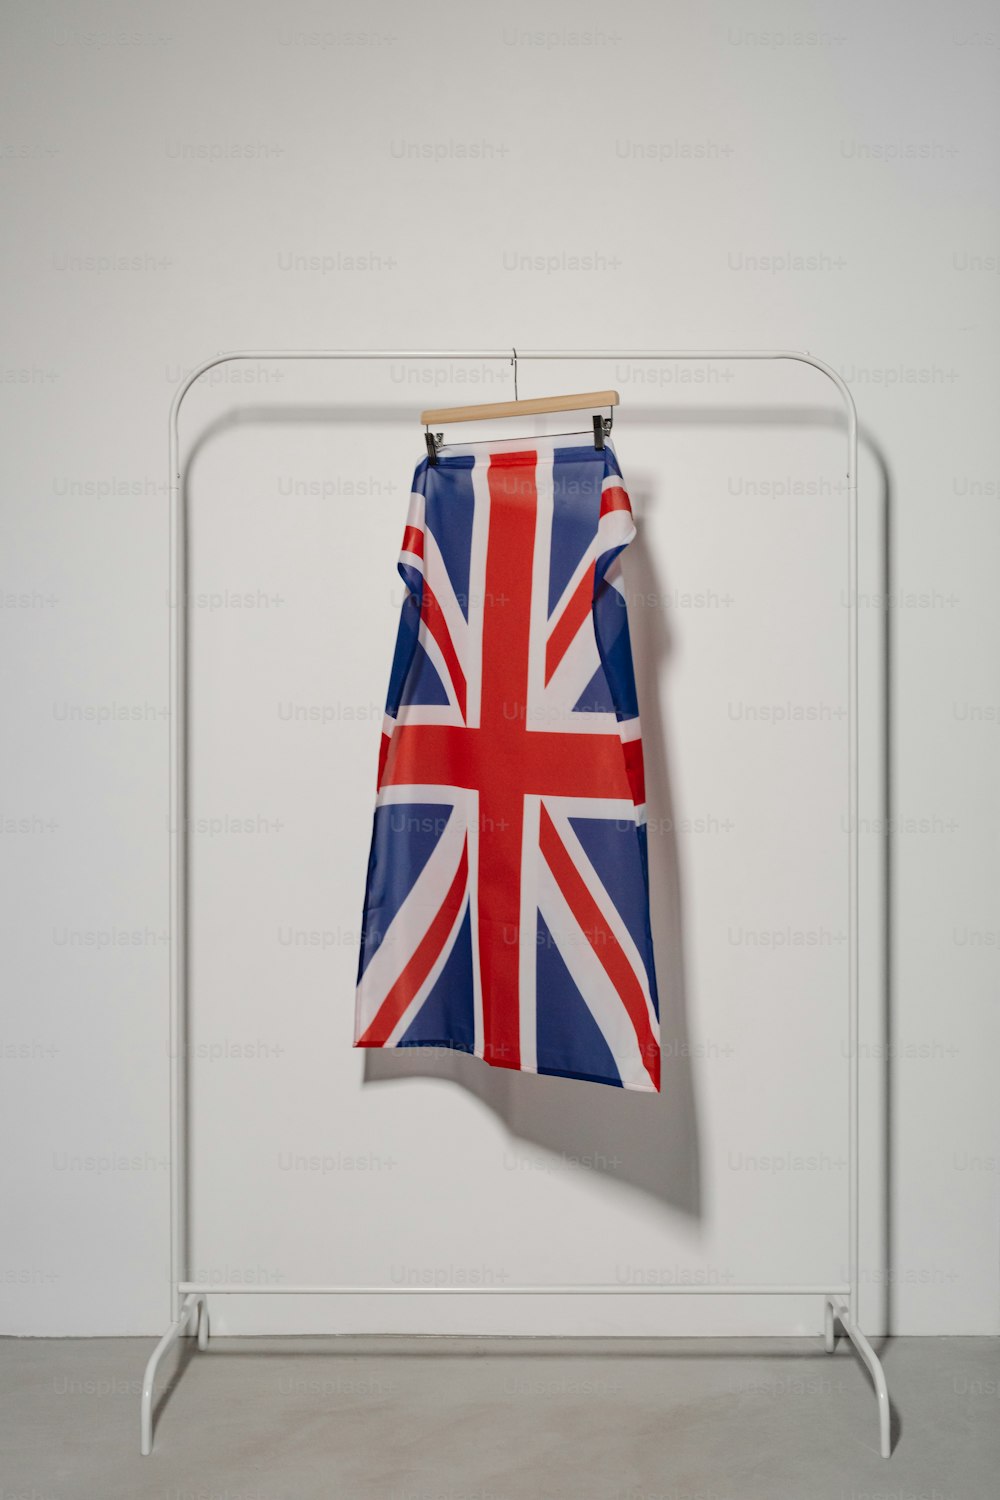 옷걸이에 걸려 있는 영국 국기